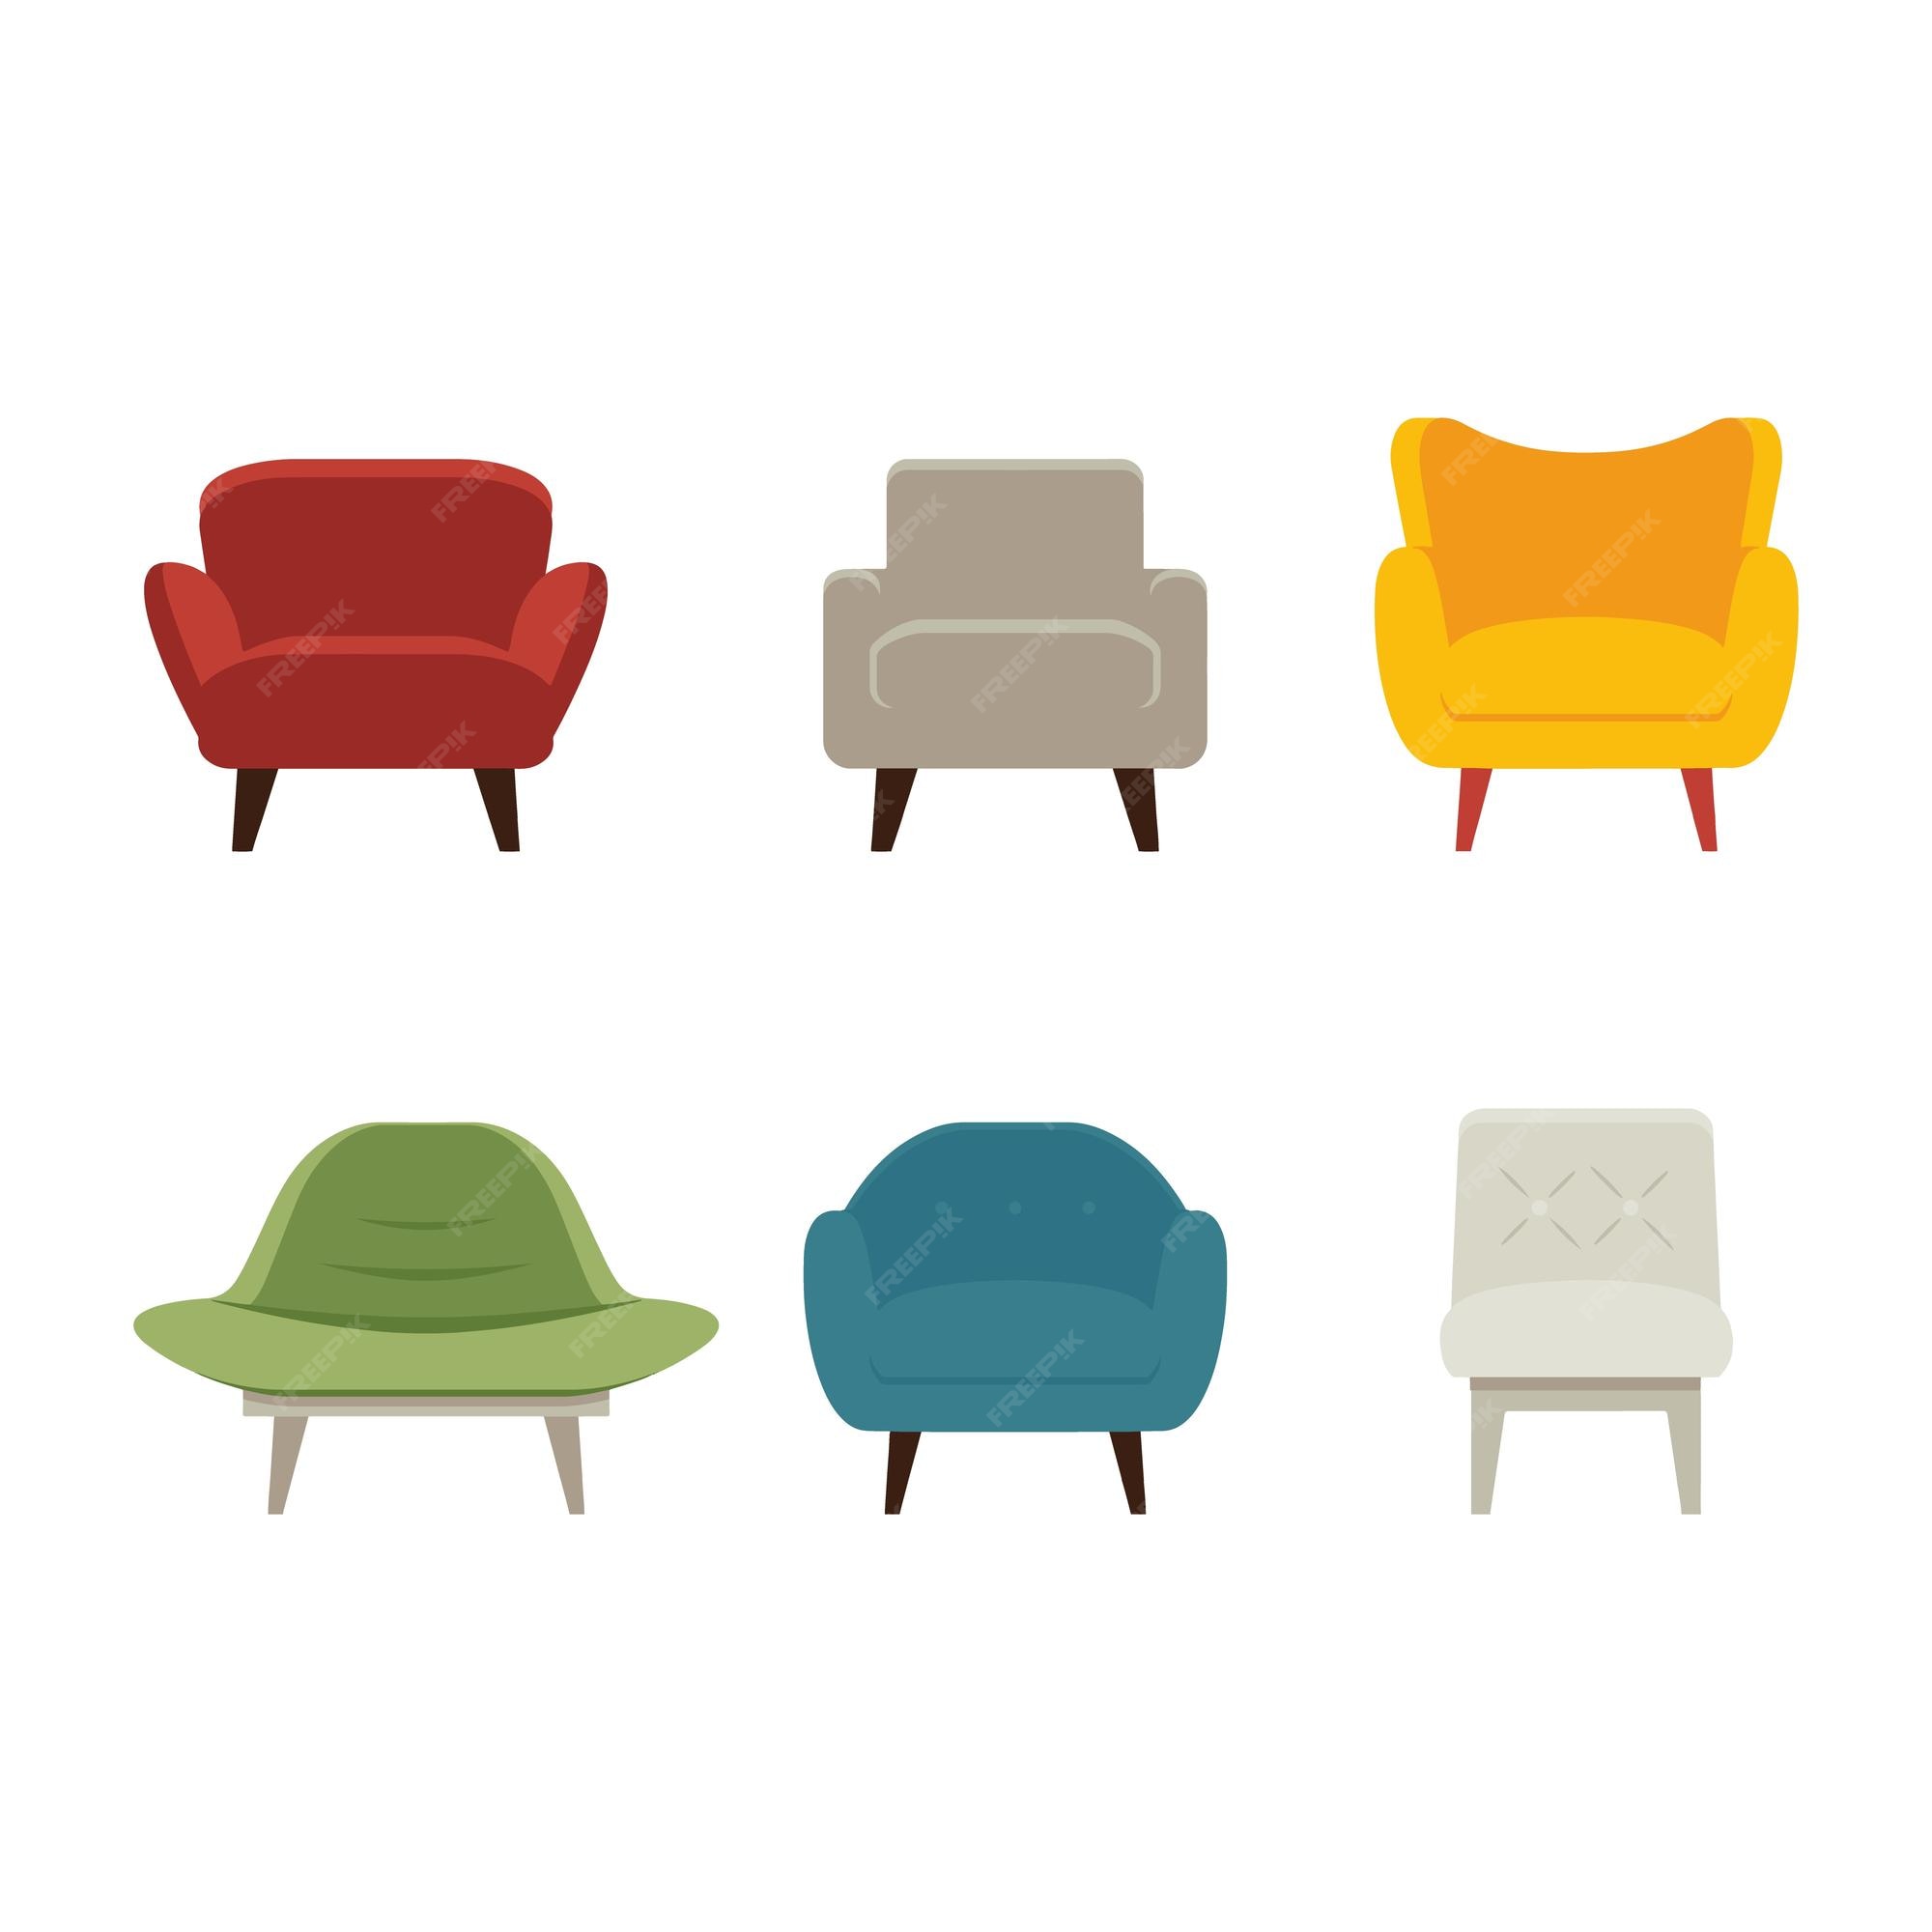 Voorloper Mainstream begaan Zachte stoelen fauteuils in verschillende kleuren een set mooie  comfortabele stoelen | Premium Vector